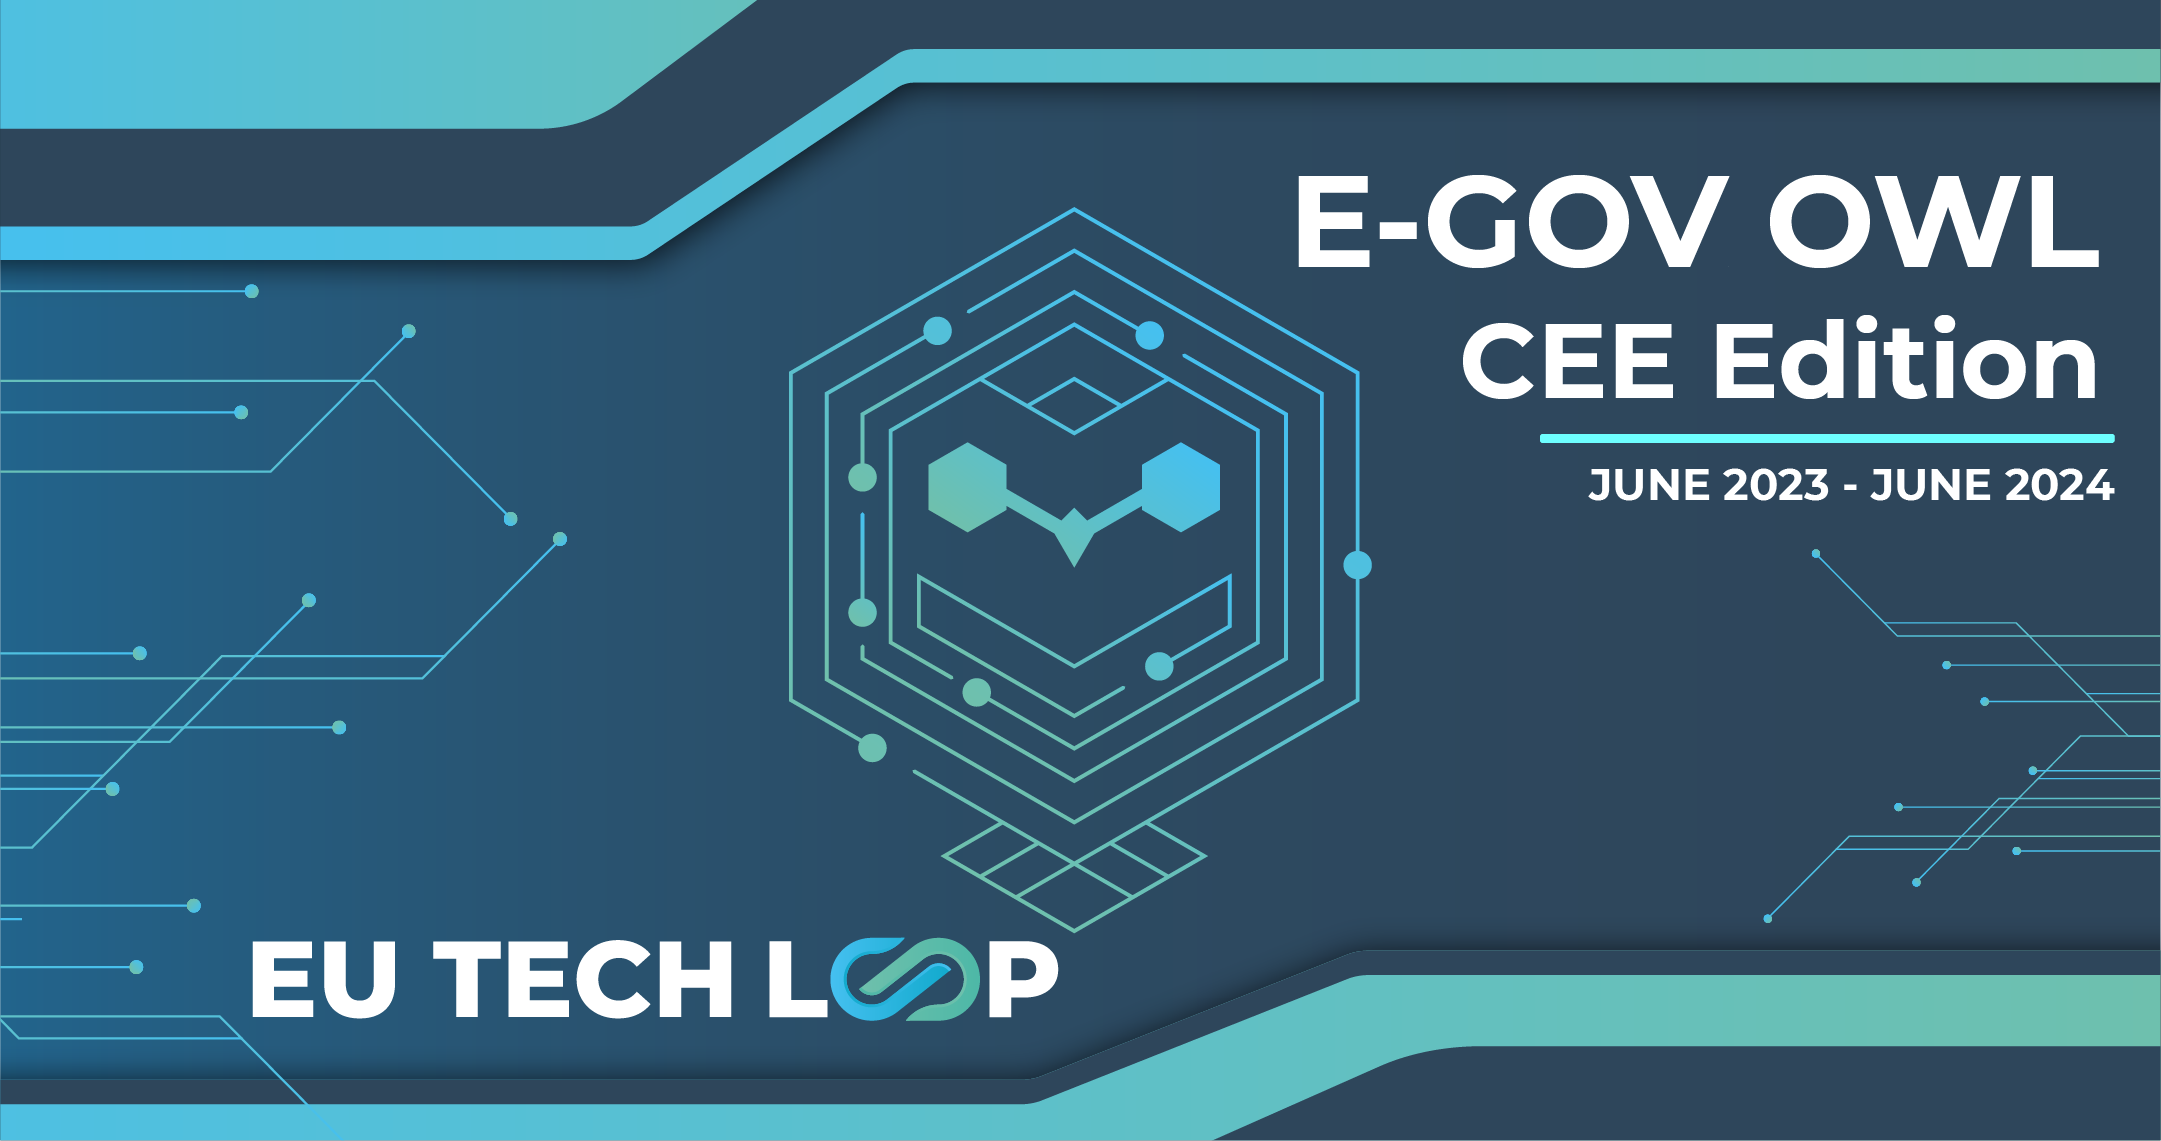 Meet E-GOV Owl: governments' digital transformation report